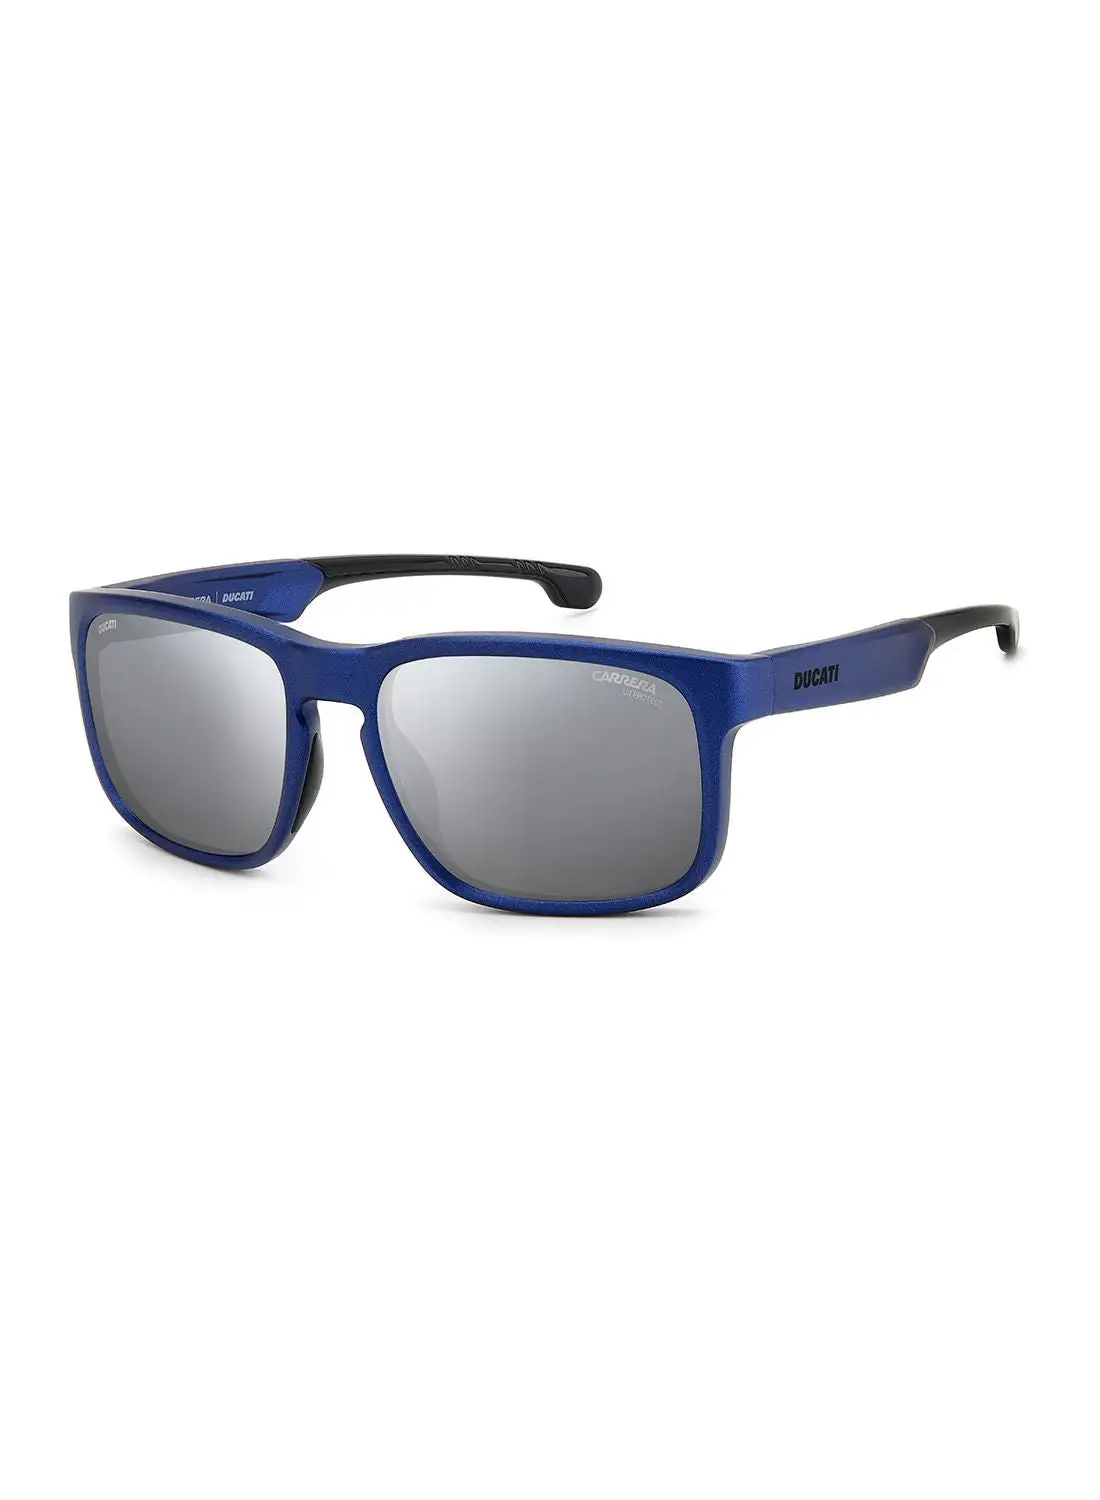 نظارة كاريرا الشمسية مستطيلة الشكل للحماية من الأشعة فوق البنفسجية للرجال - Carduc 001/S Blue Metal 57 - مقاس العدسة: 57 ملم